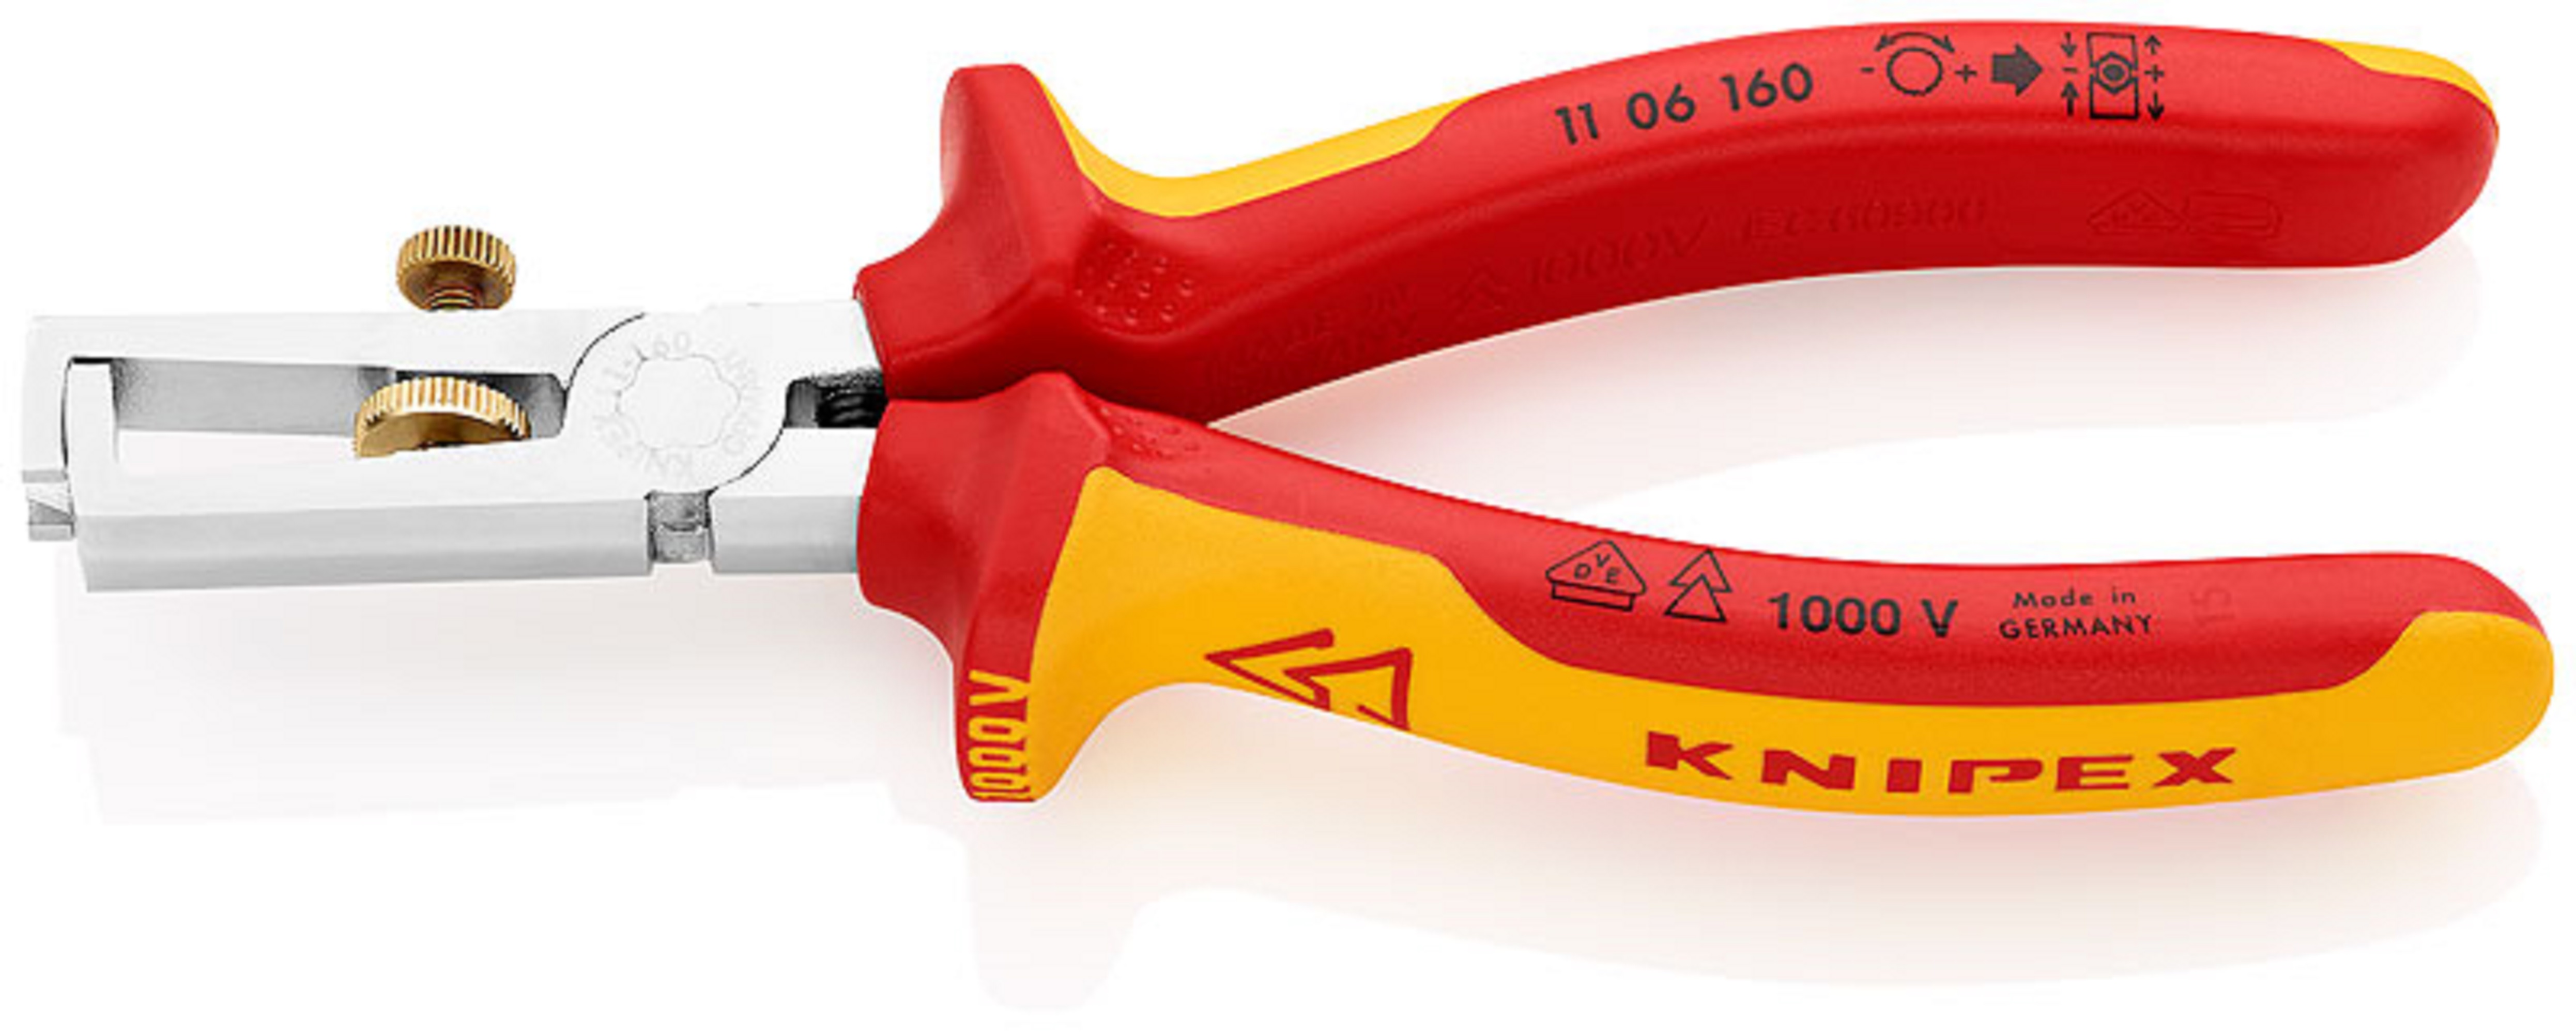 Knipex afstriptang+veer VDE 160mm - Ø 5-10mm - 1106160